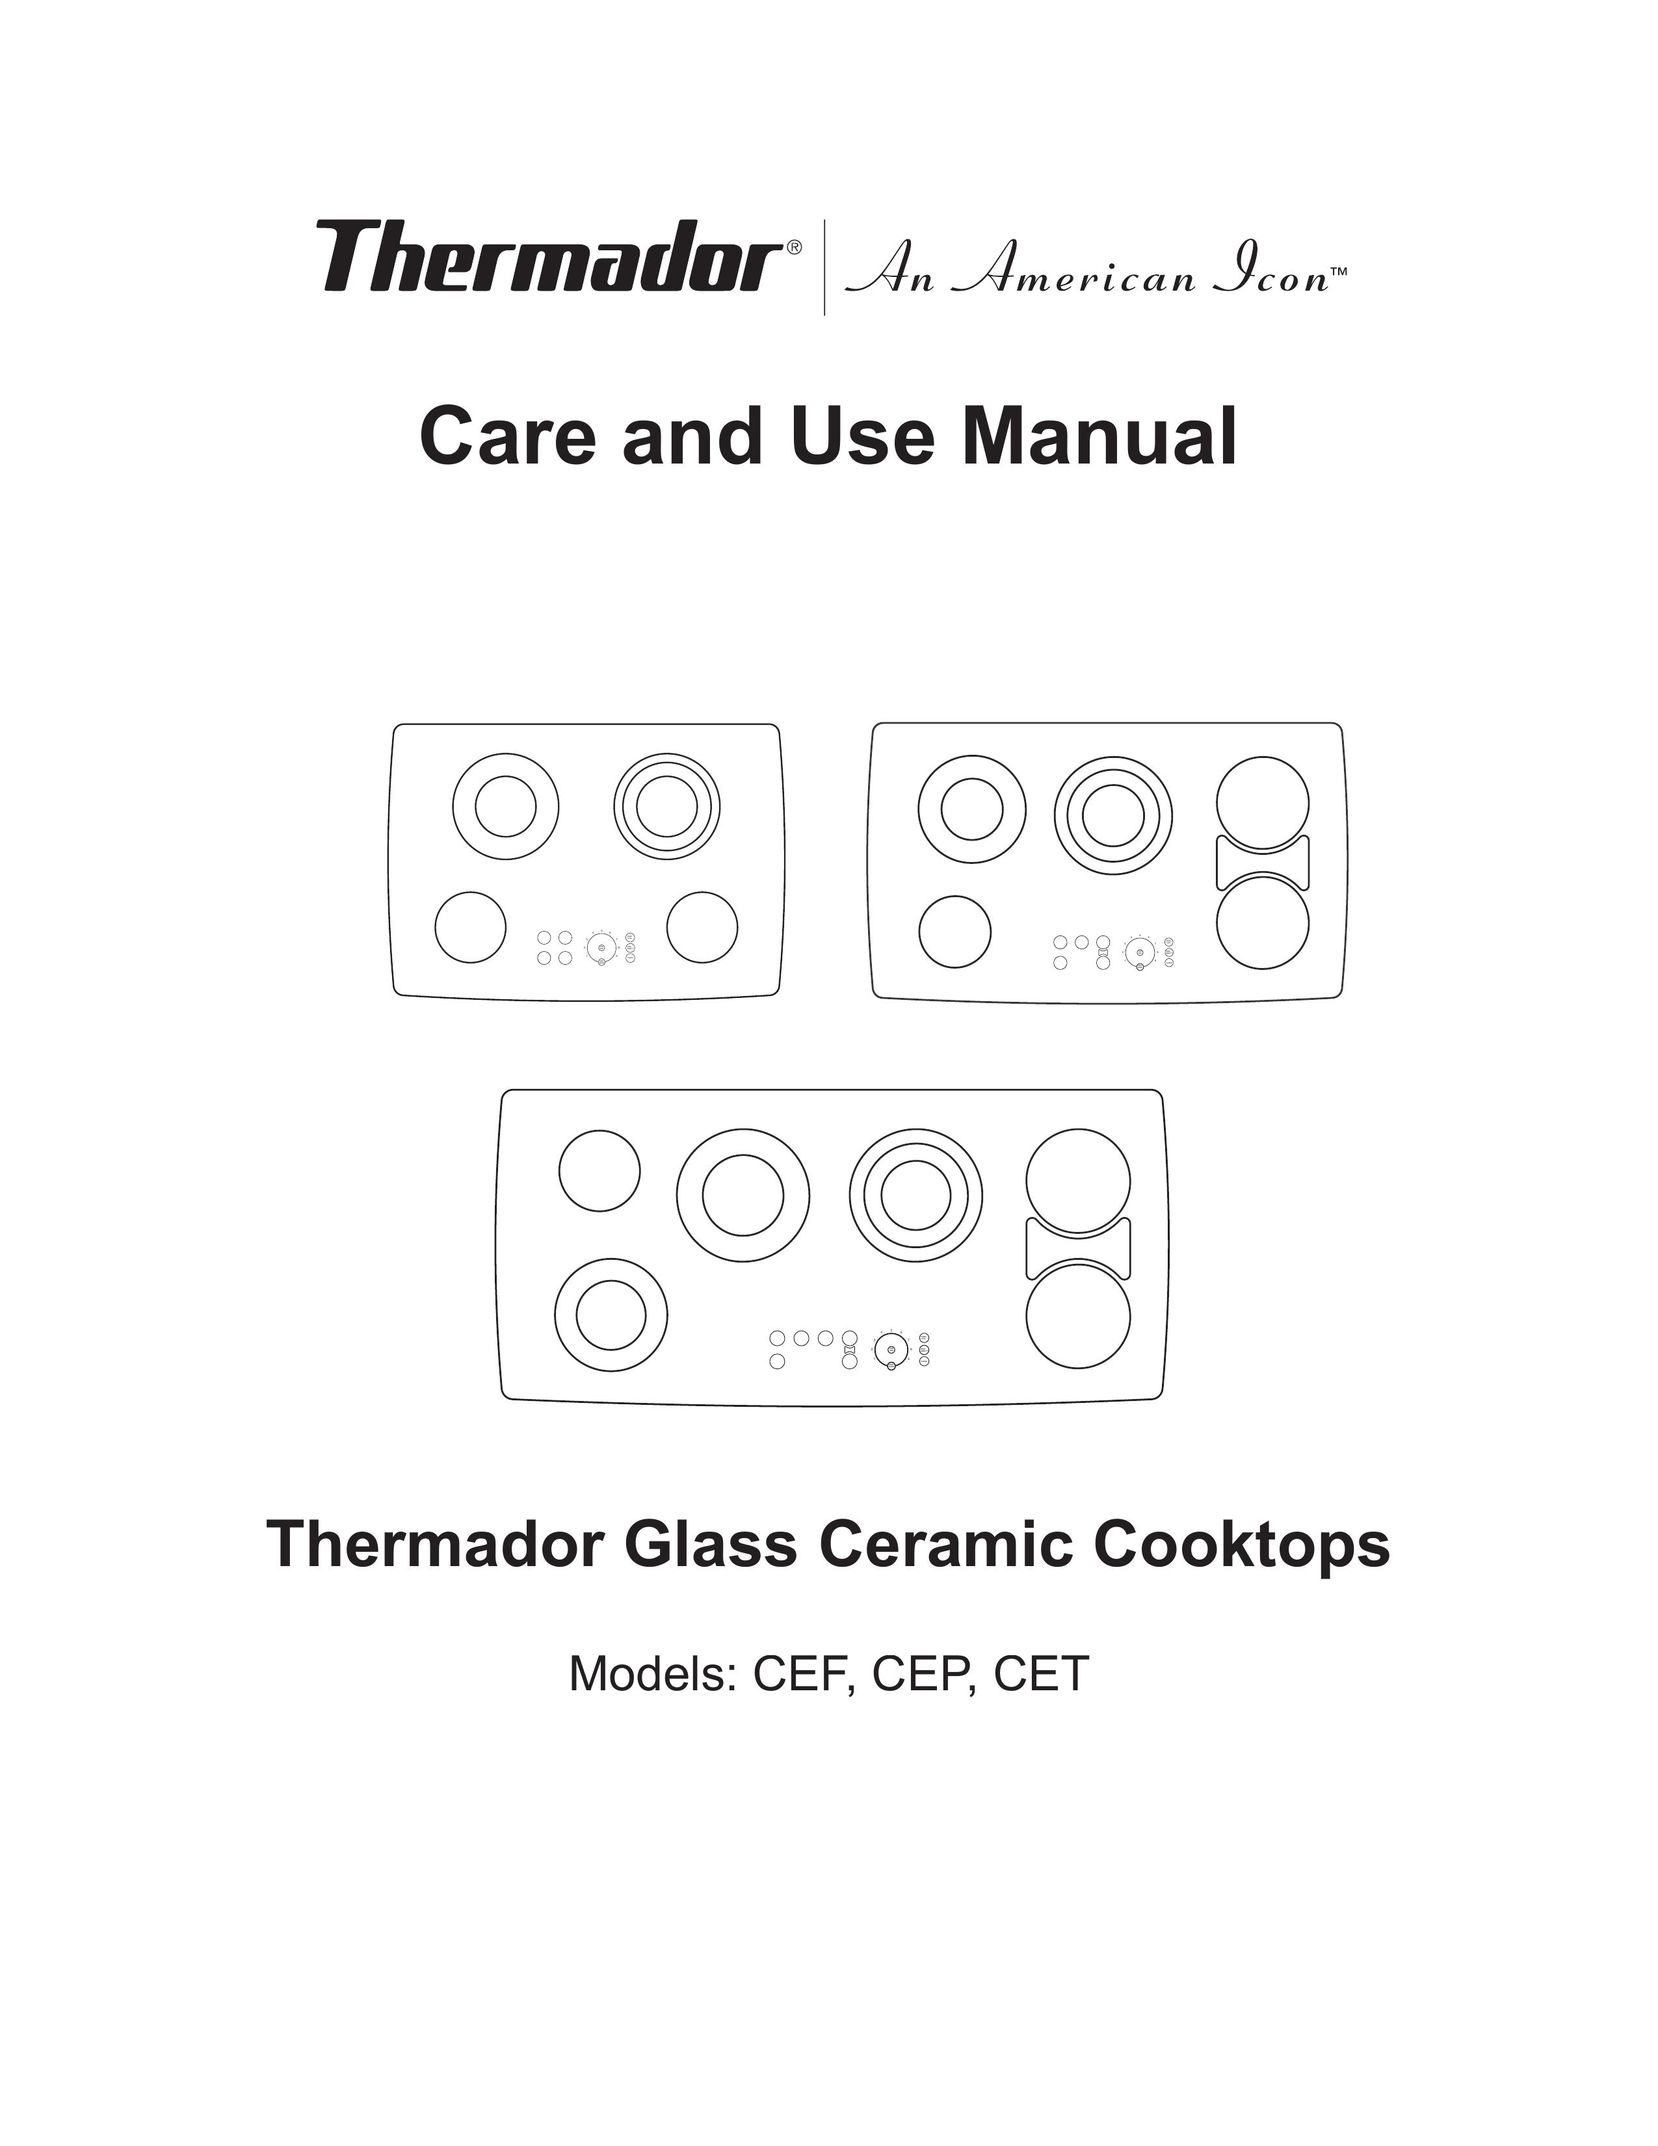 Thermador CET Cooktop User Manual